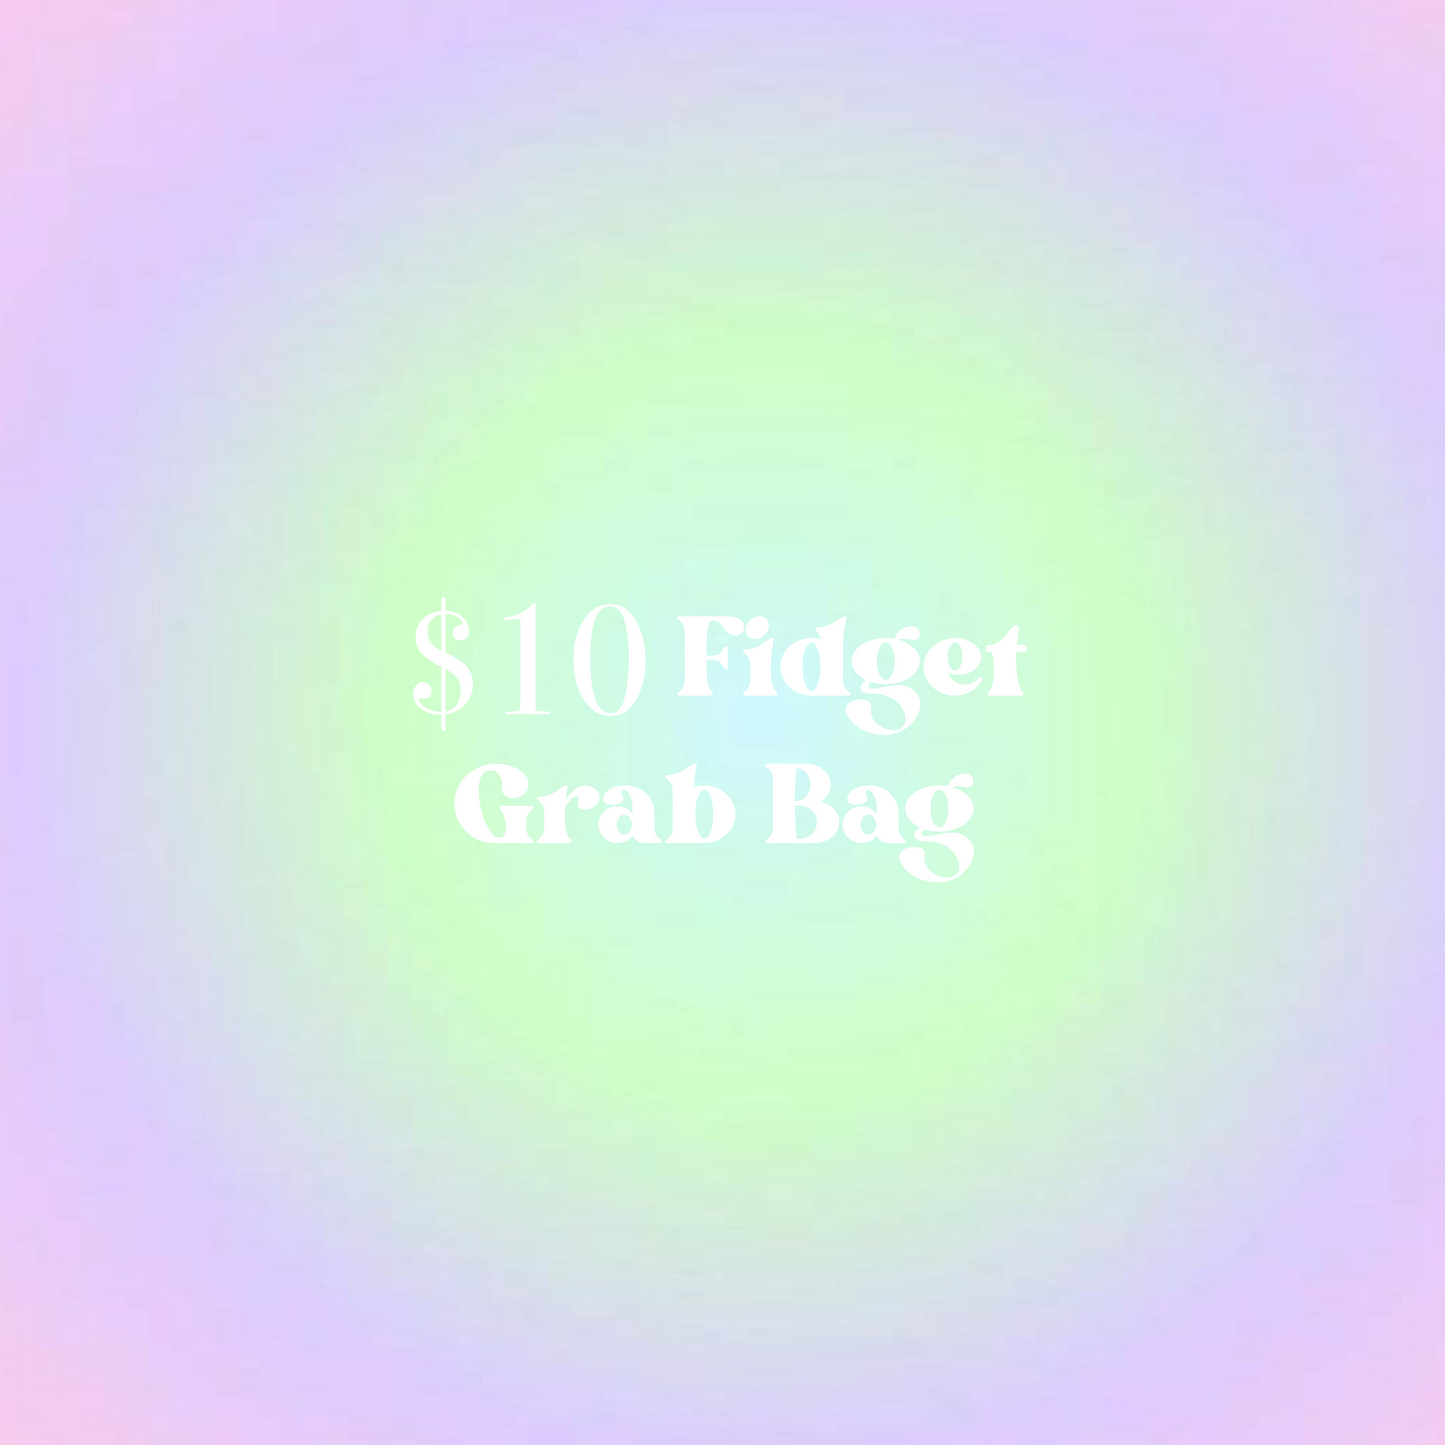 $10 Fidget Grab Bag